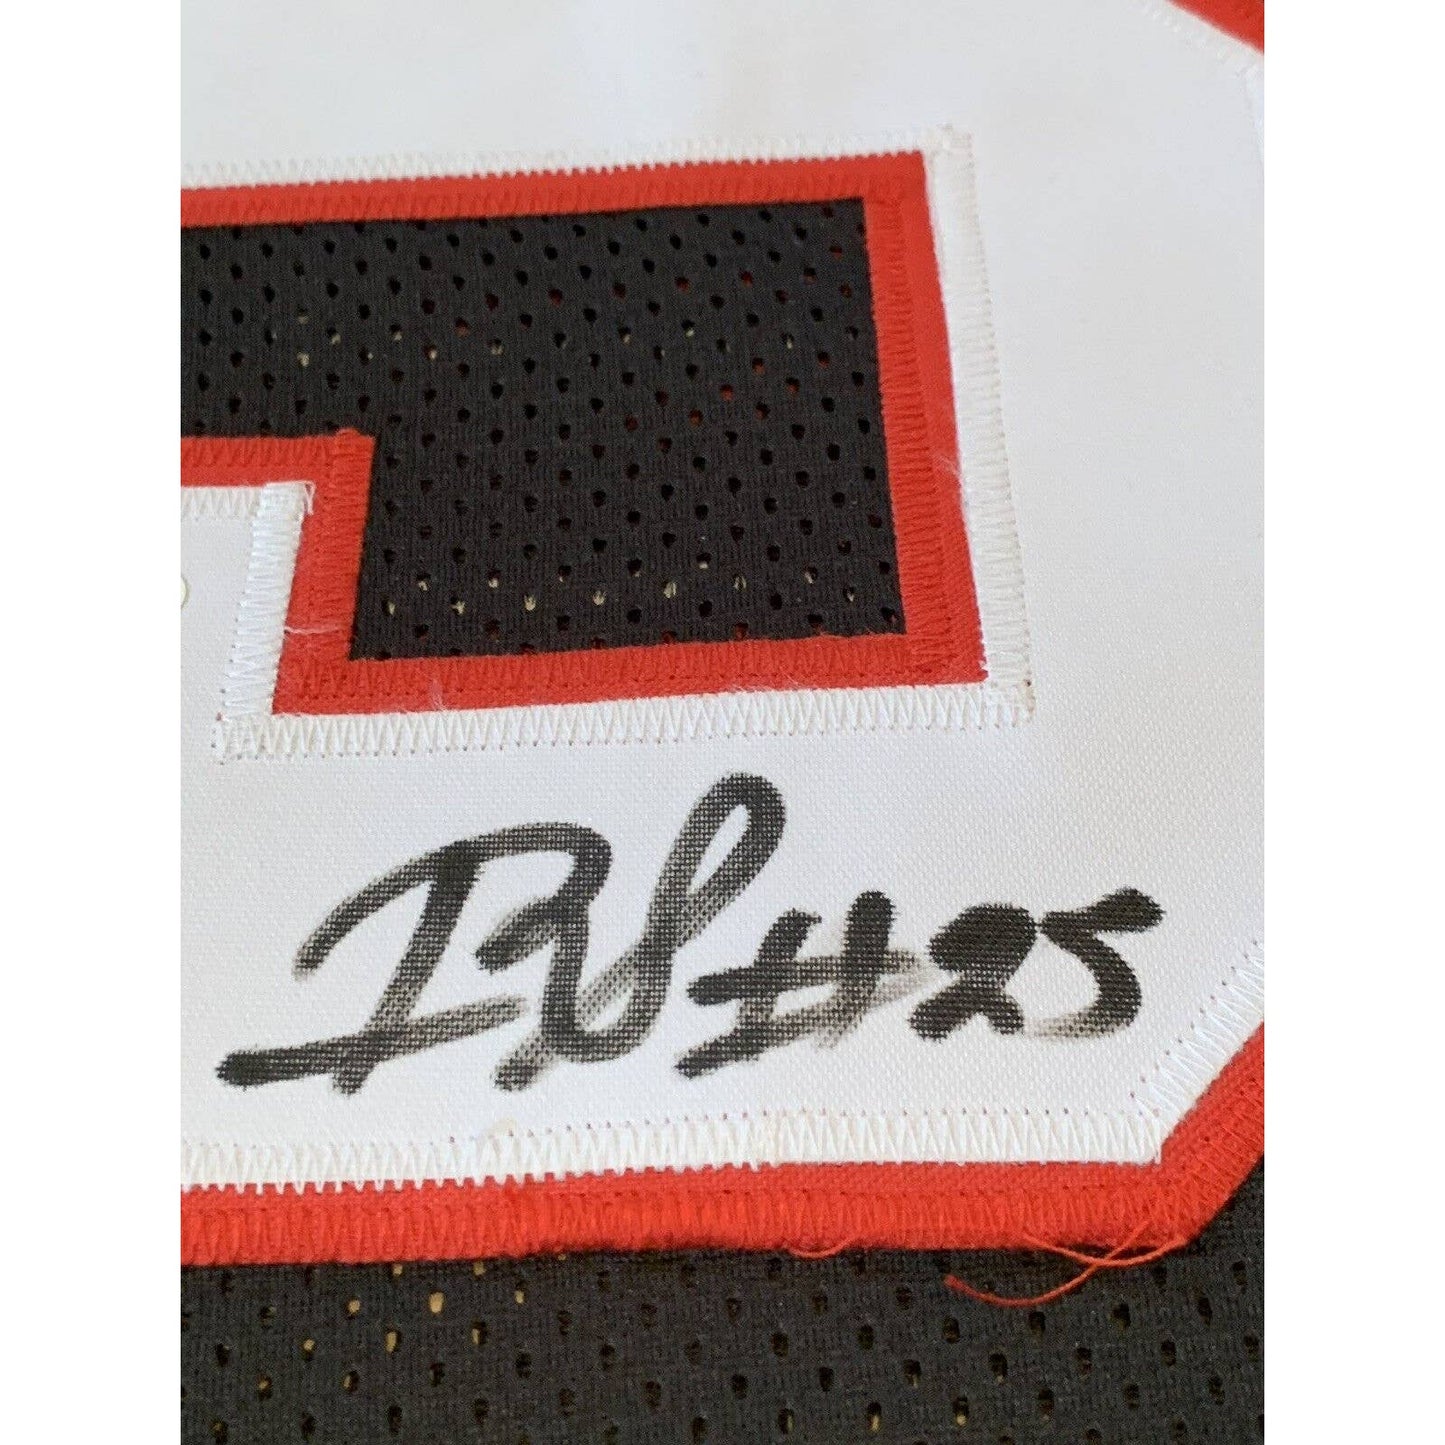 Ito Smith Autographed/Signed Jersey JSA COA Atlanta Falcons - TreasuresEvolved